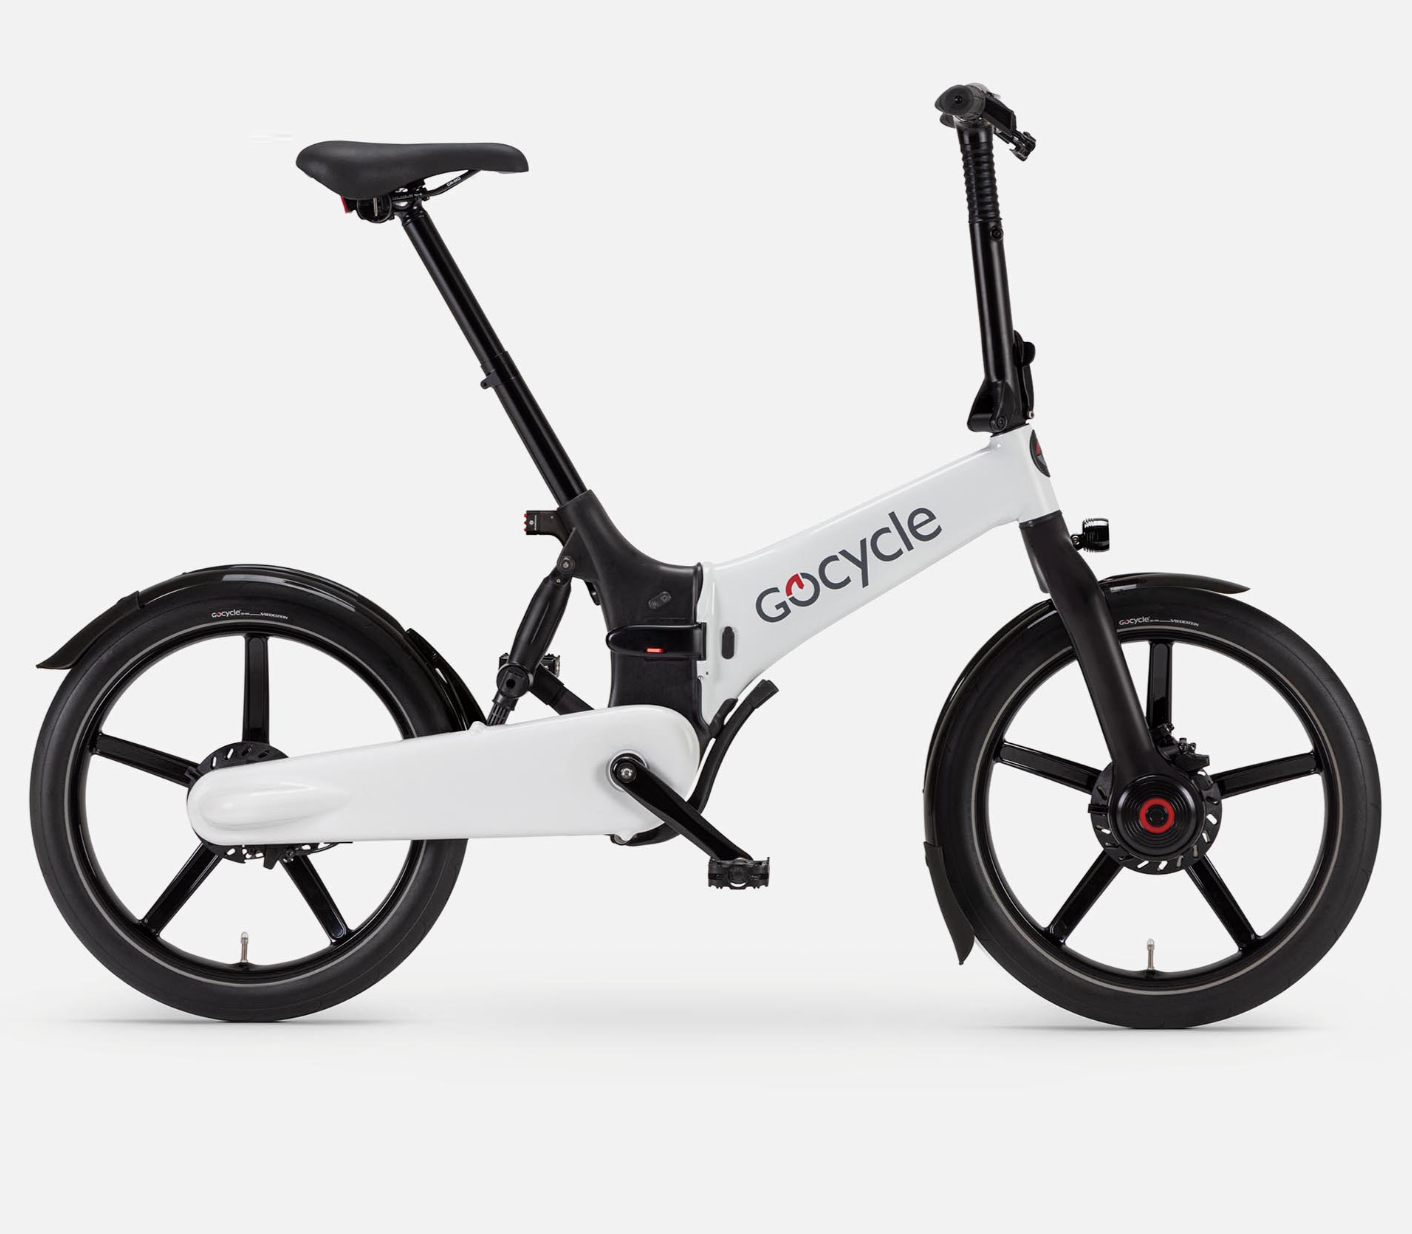 Gocycle G4i white electric folding bike